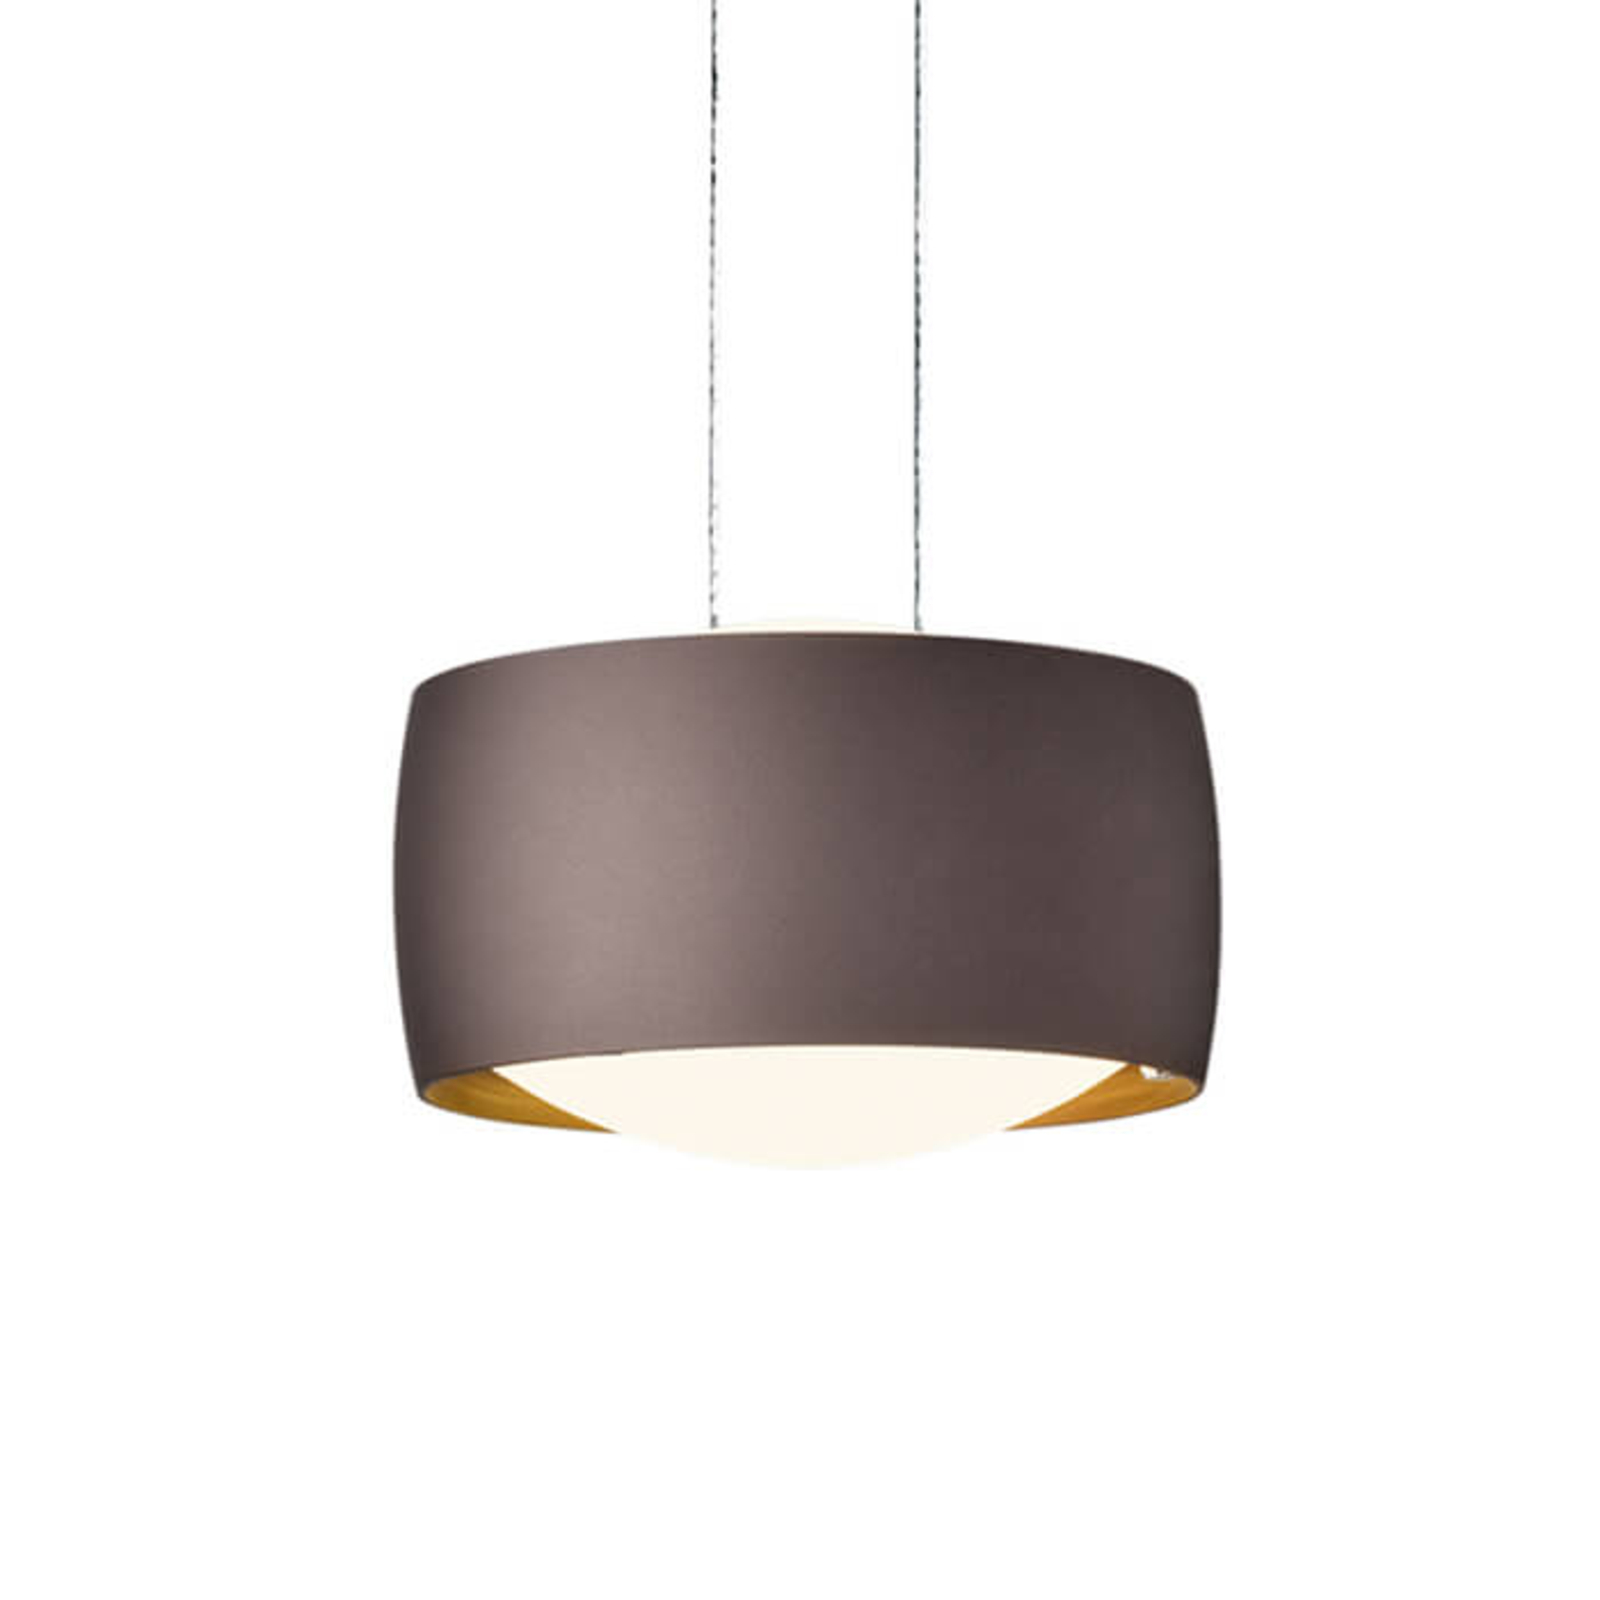 Je zal beter worden anker Verleiding In hoogte verstelbare LED hanglamp Grace in bruin | Lampen24.nl